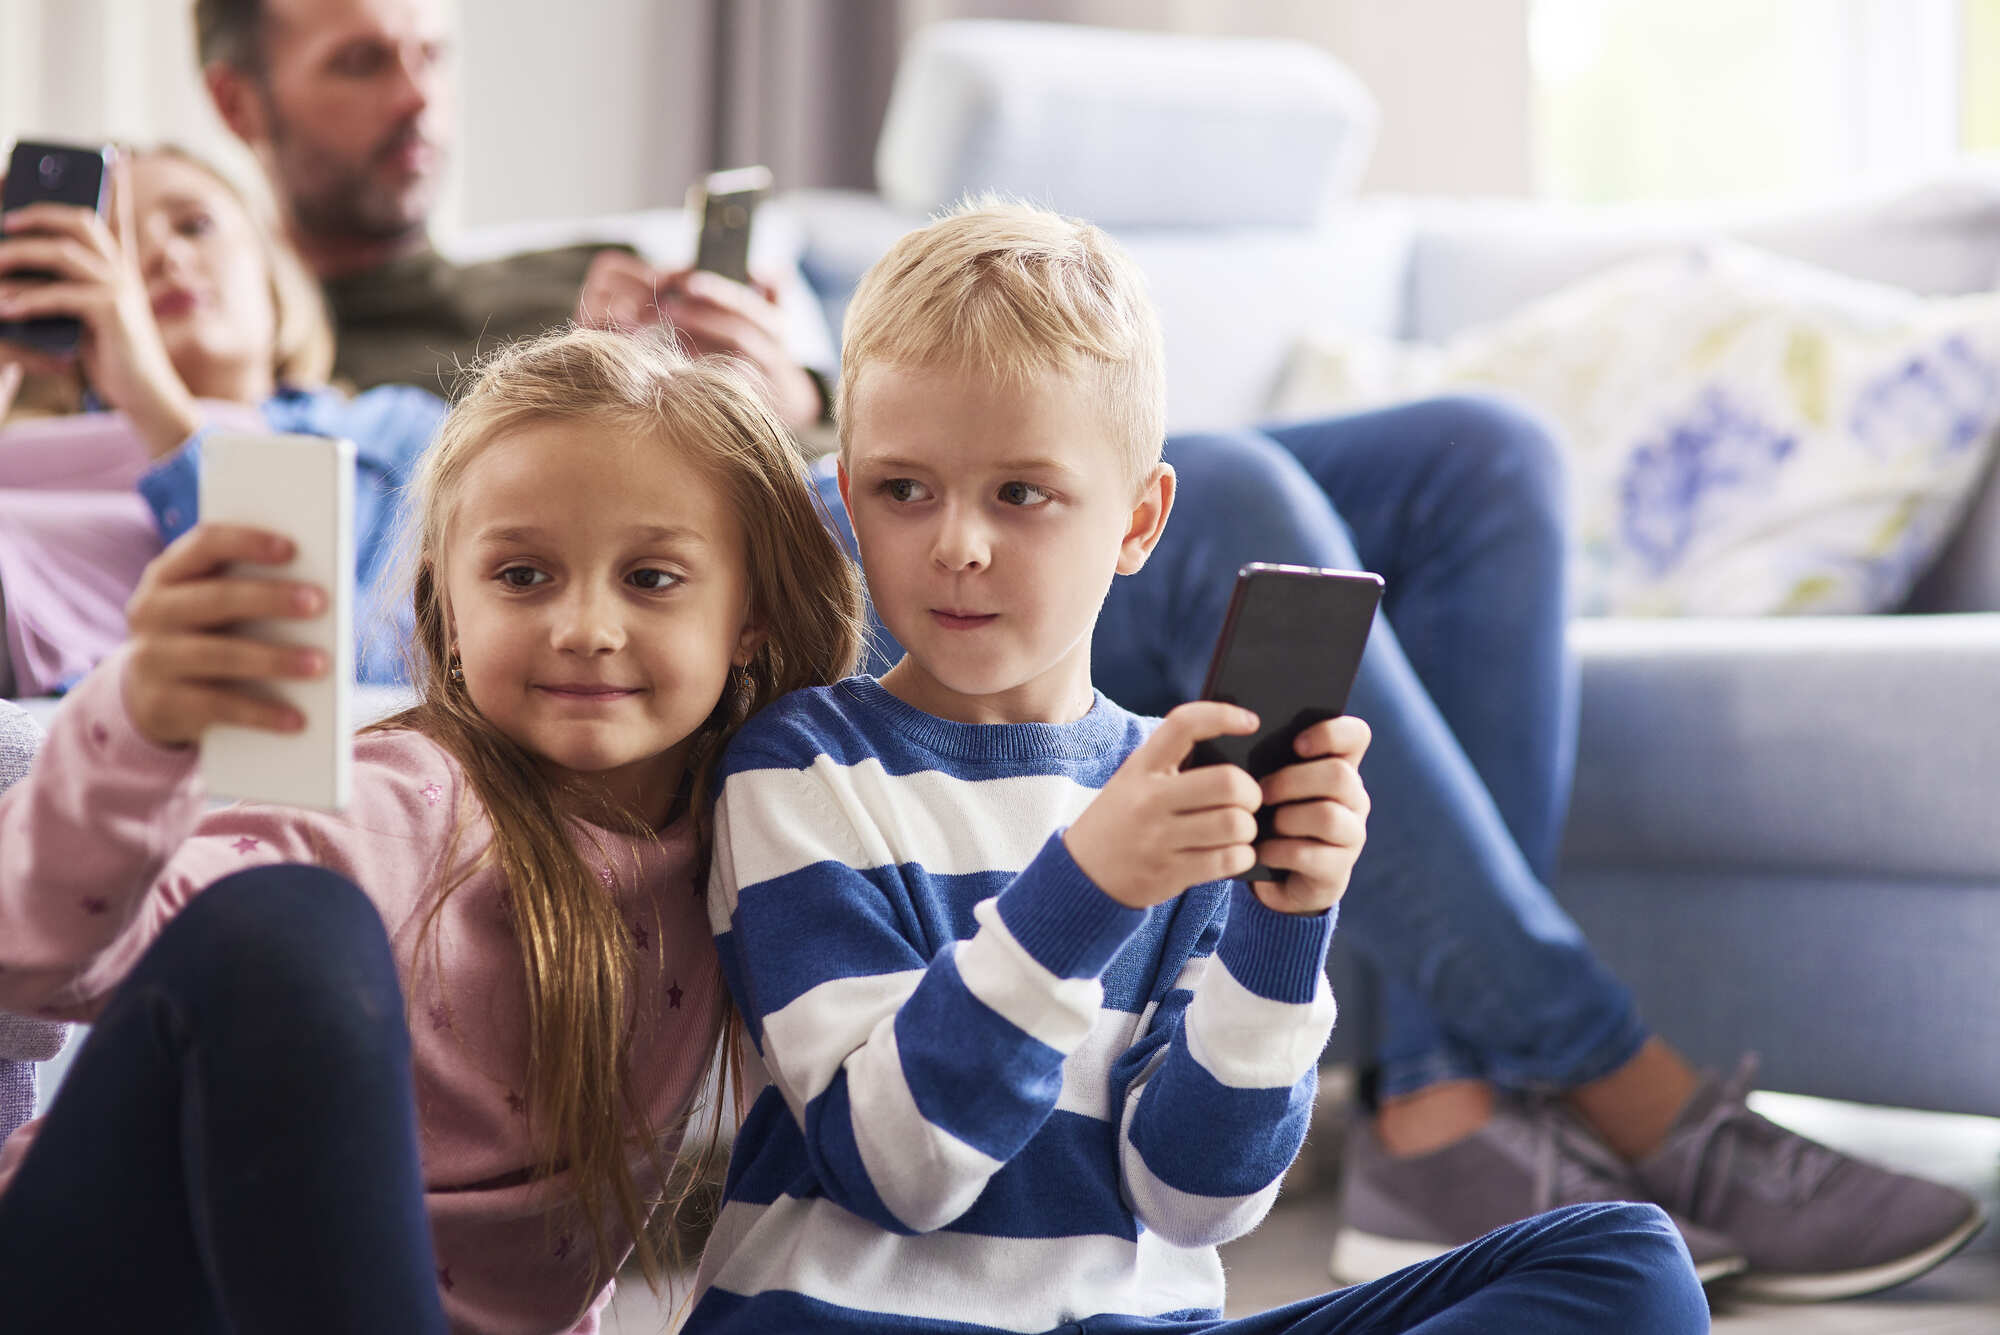 ¿Vas a comprar un smartphone a tu hijo/a? Esto es lo que debes saber…